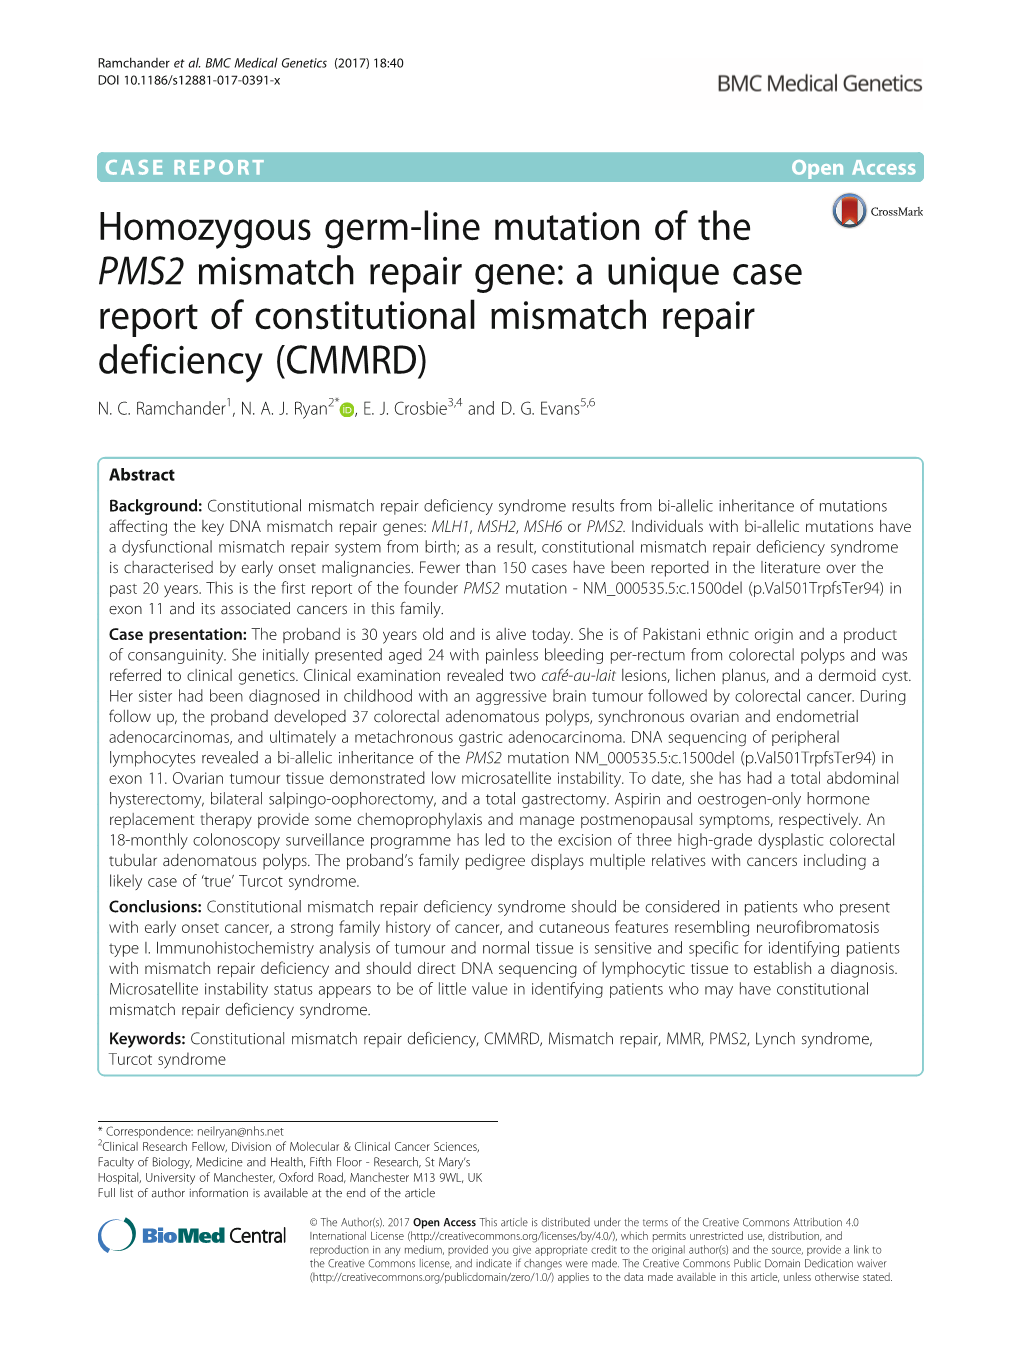 Homozygous Germ-Line Mutation of the PMS2 Mismatch Repair Gene: a Unique Case Report of Constitutional Mismatch Repair Deficiency (CMMRD) N